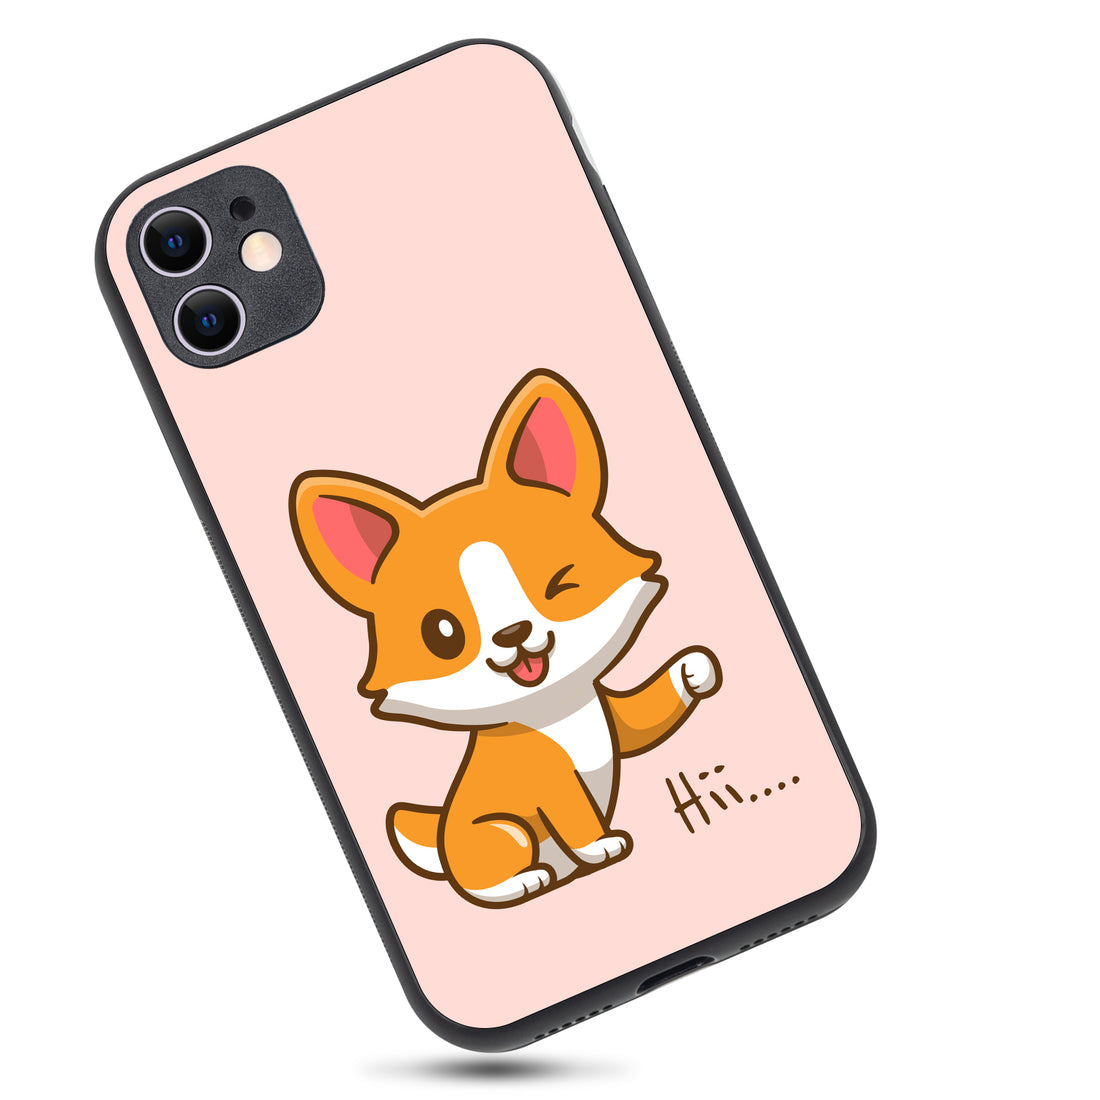 Hi Cute Bff iPhone 11 Case